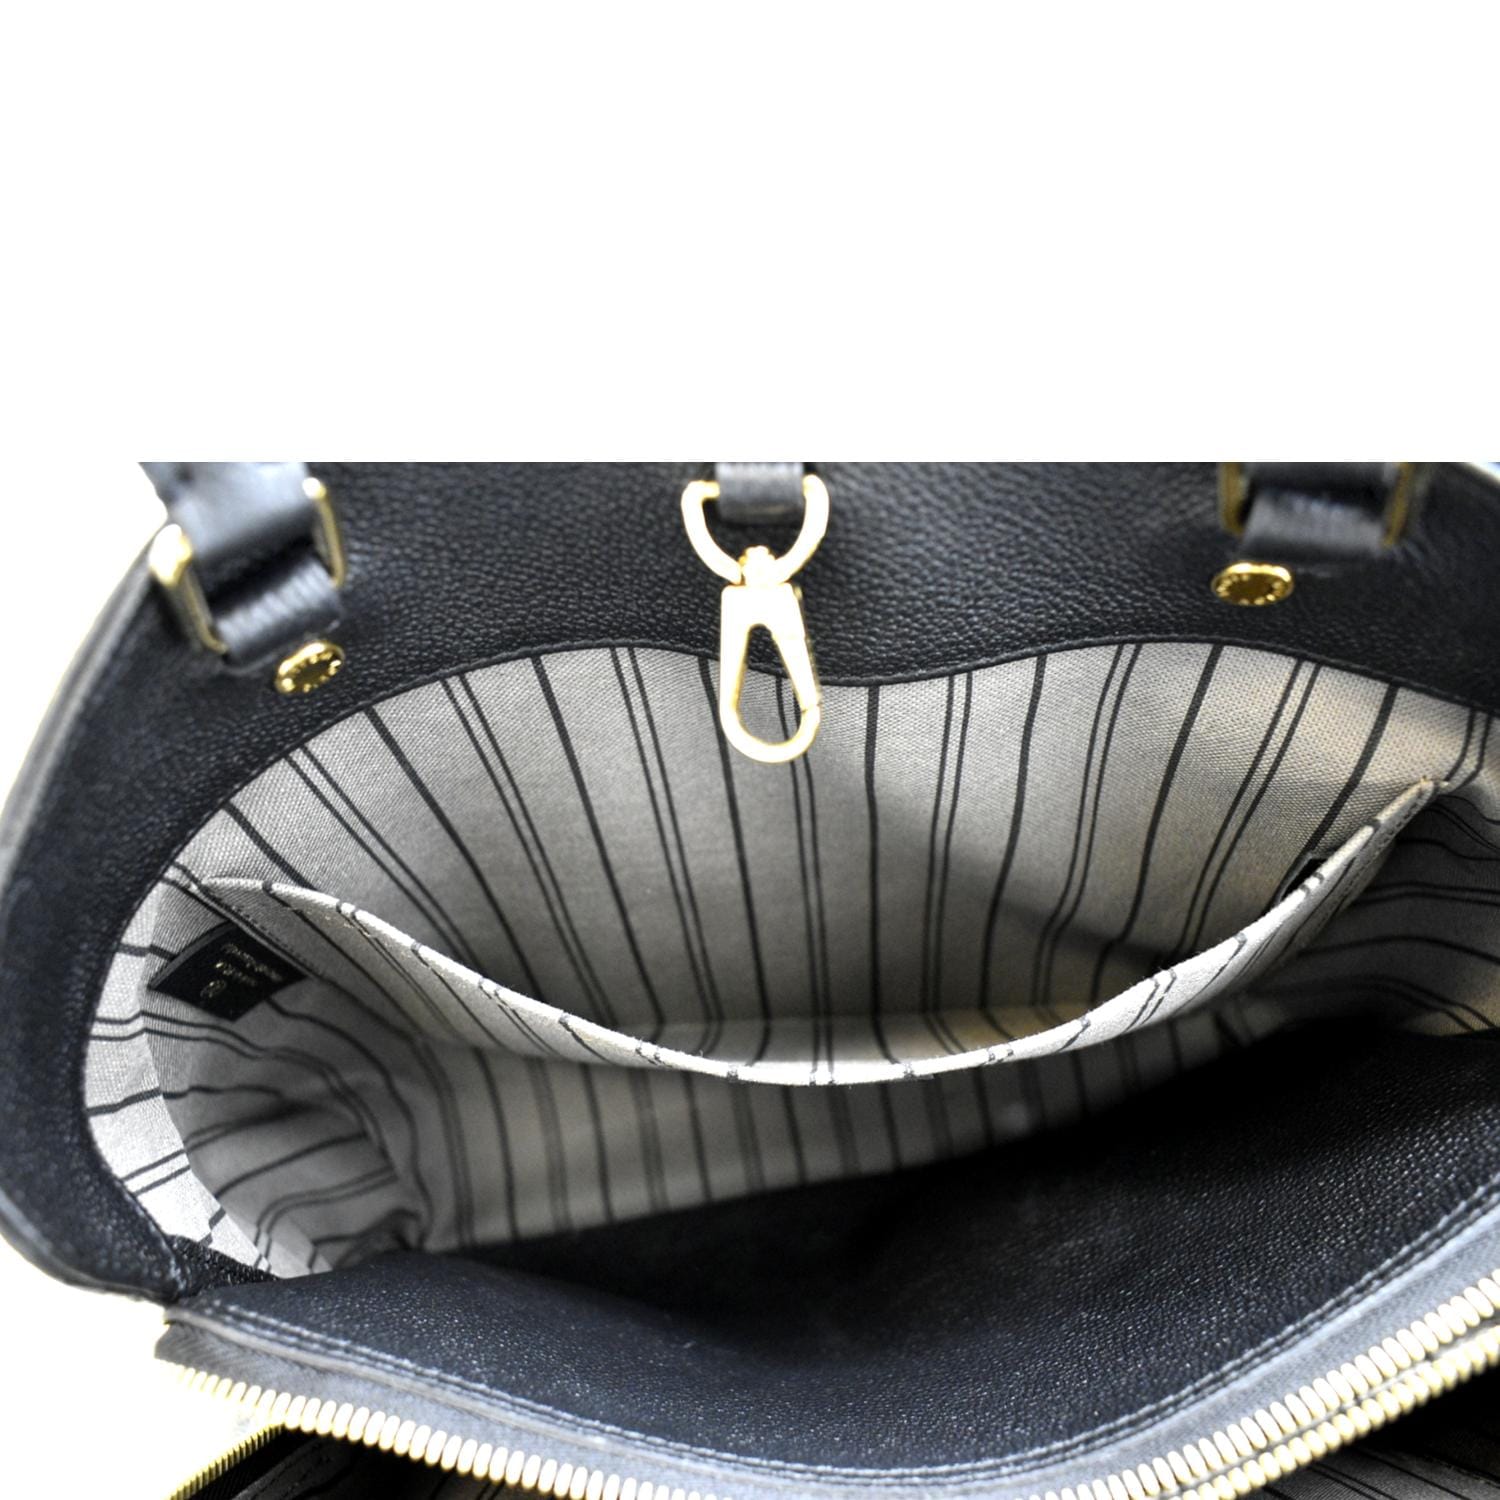 Montaigne MM Empreinte – Keeks Designer Handbags